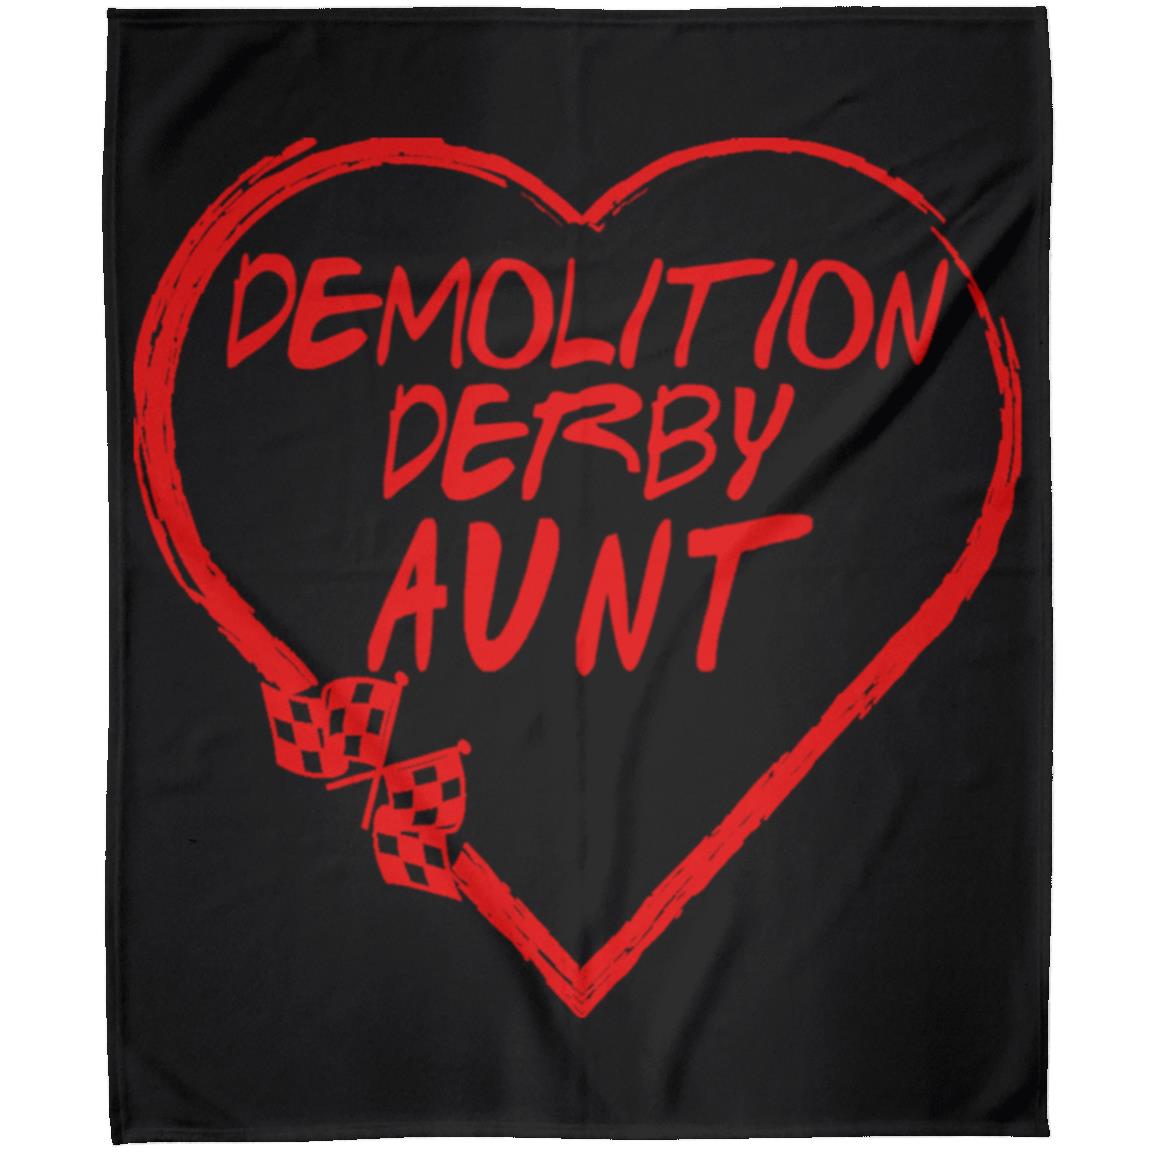 Demolition Derby Aunt Heart Arctic Fleece Blanket 50x60